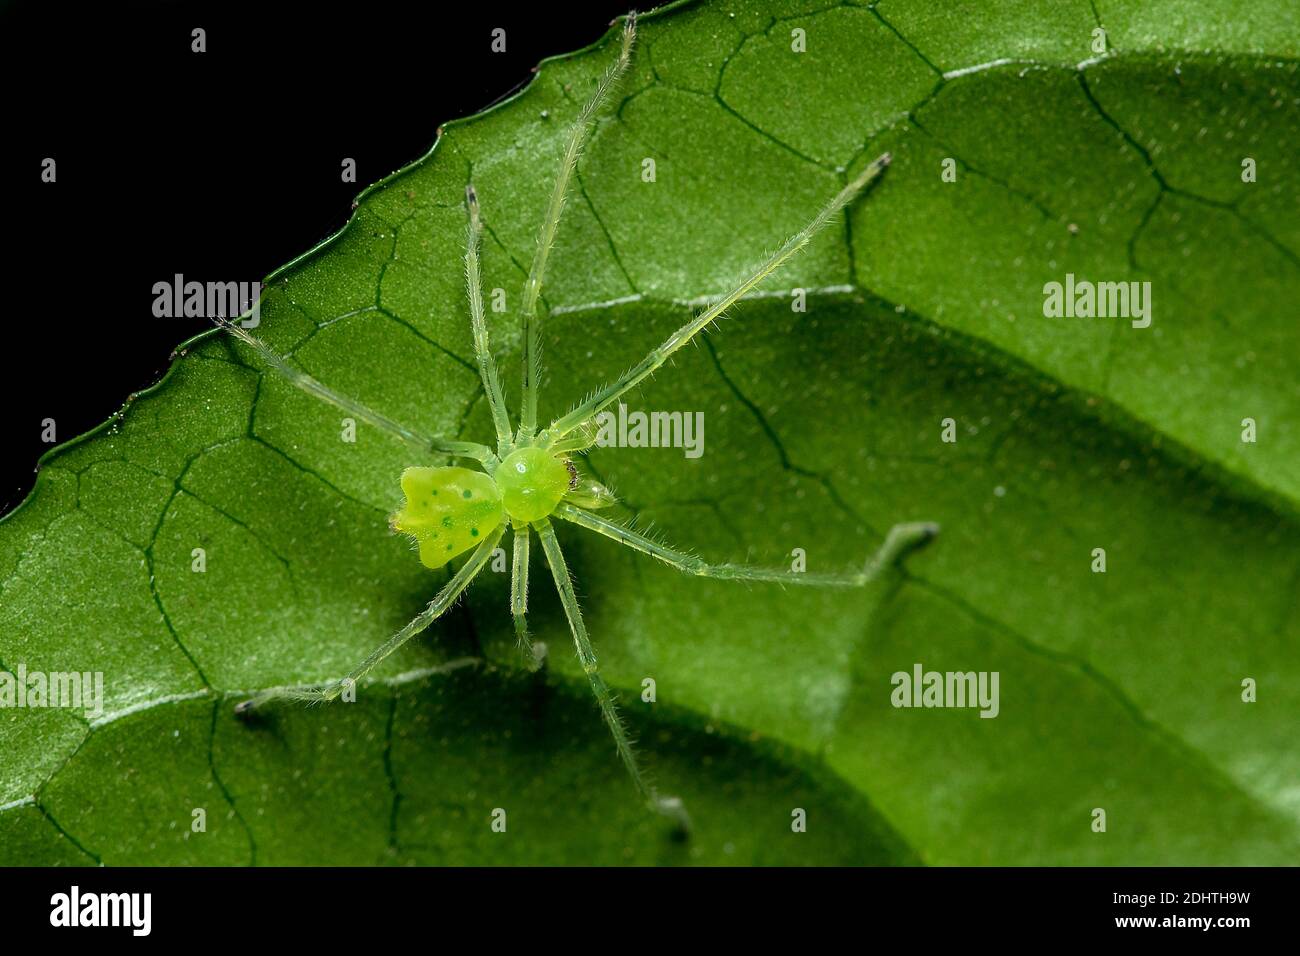 Petite araignée non identifiée de forme étrange et verte claire provenant du parc national d'Andasibe, Madagascar. Banque D'Images